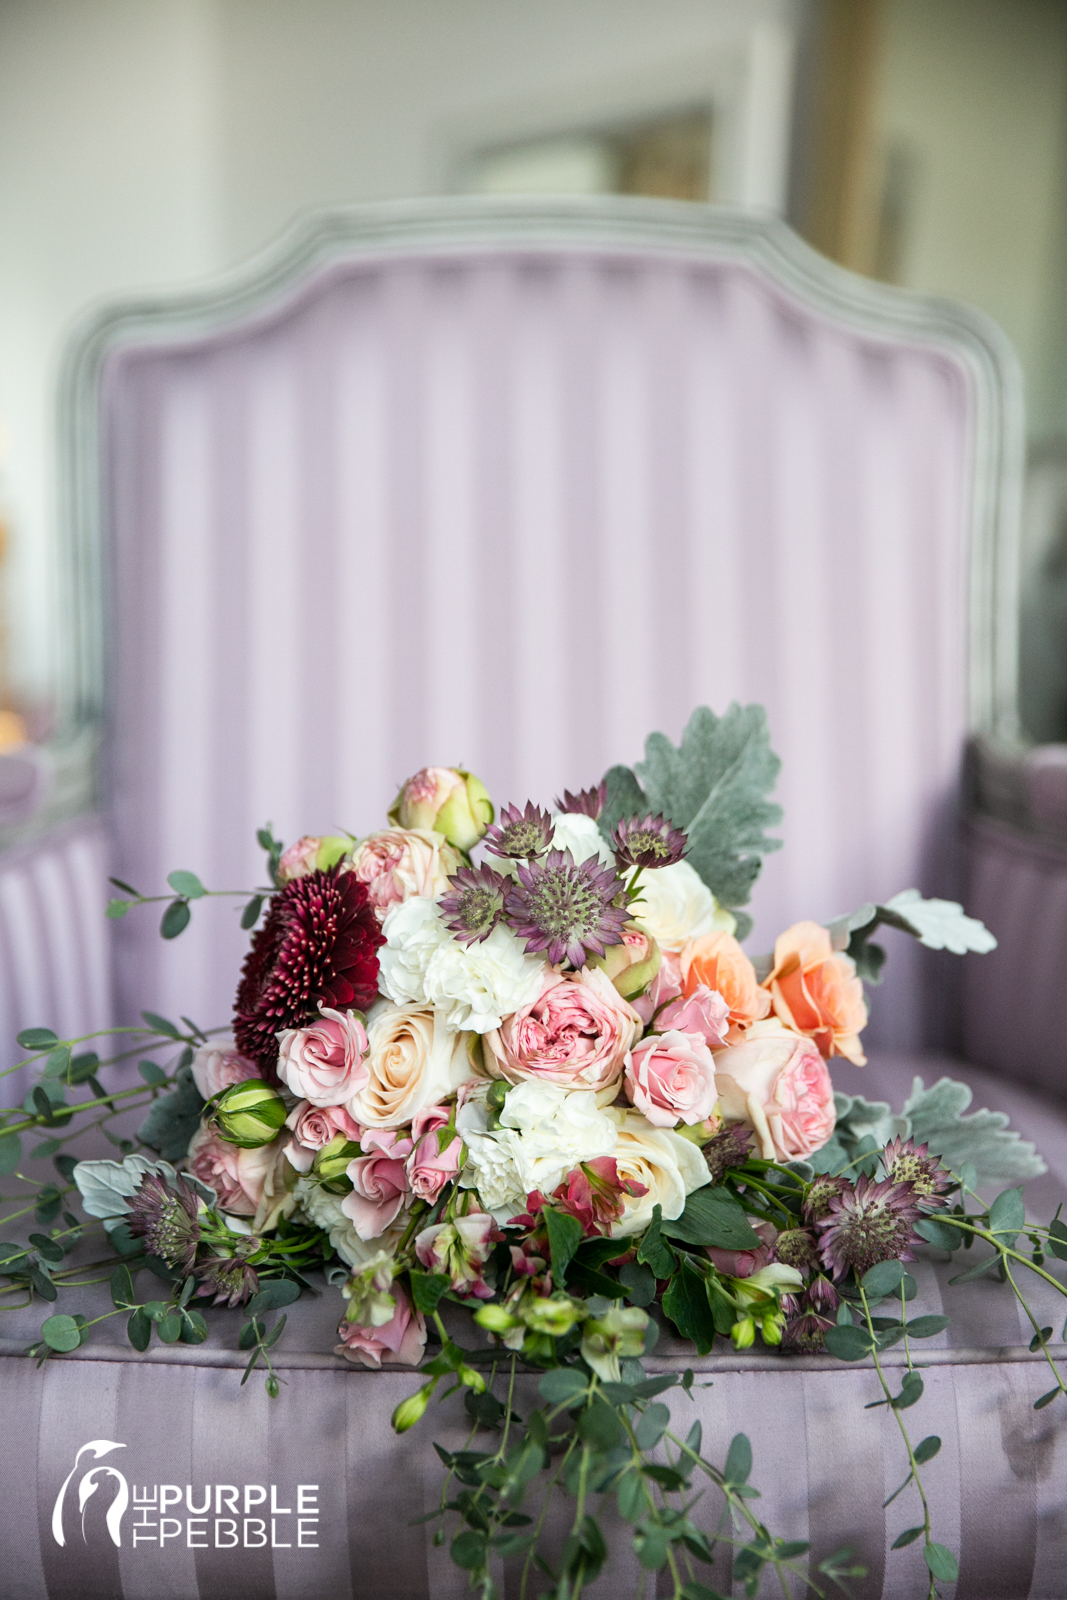 Bridal Bouquet Ideas